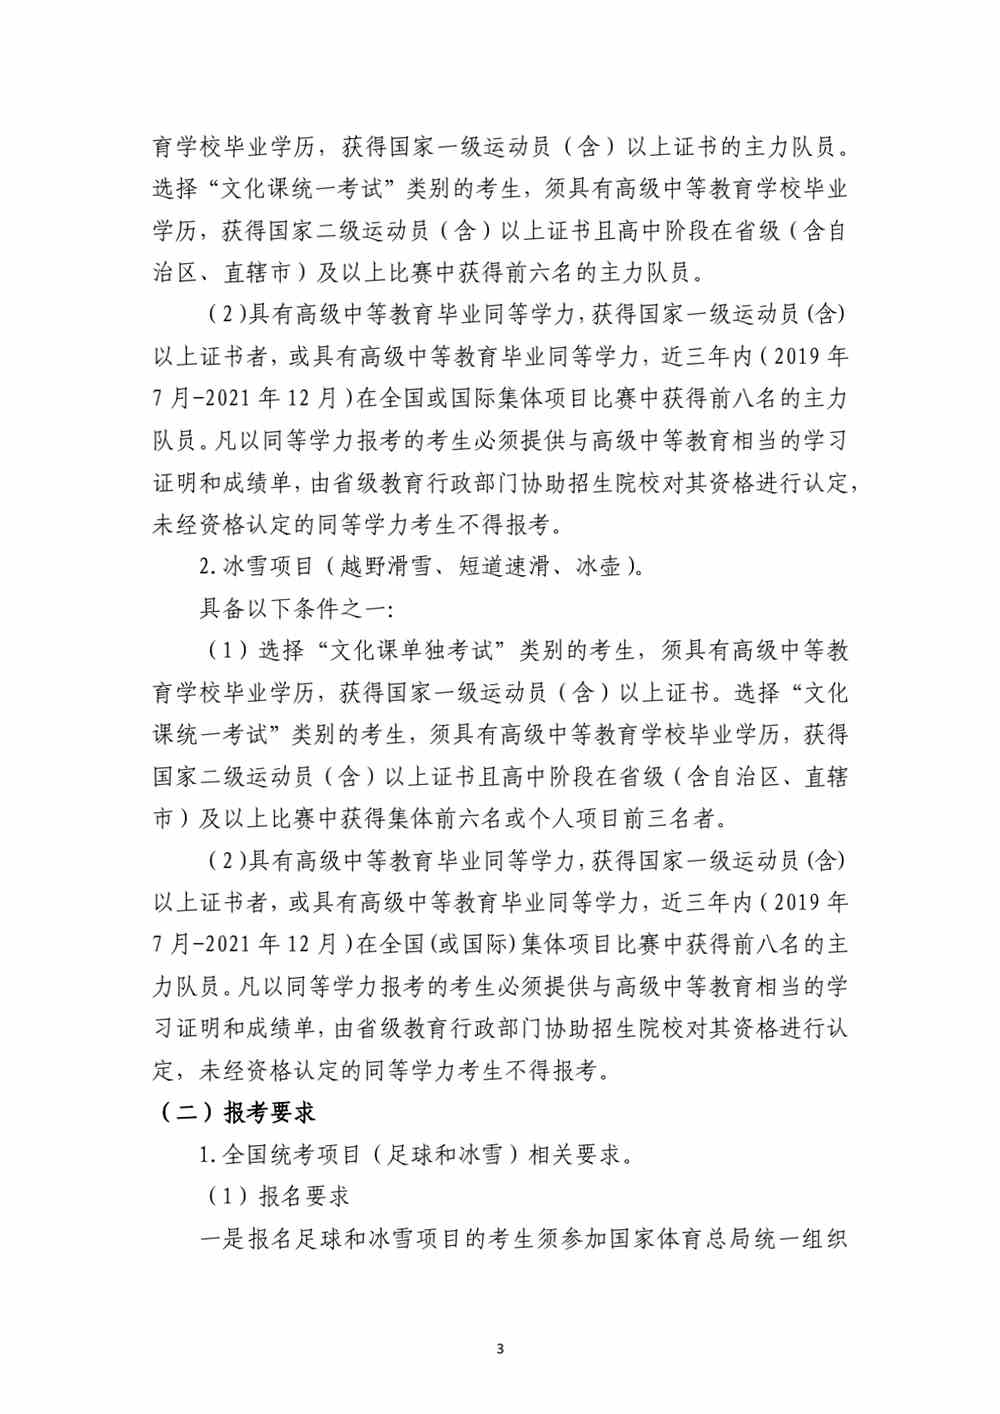 甘肃政法大学2022年高水平运动队招生简章